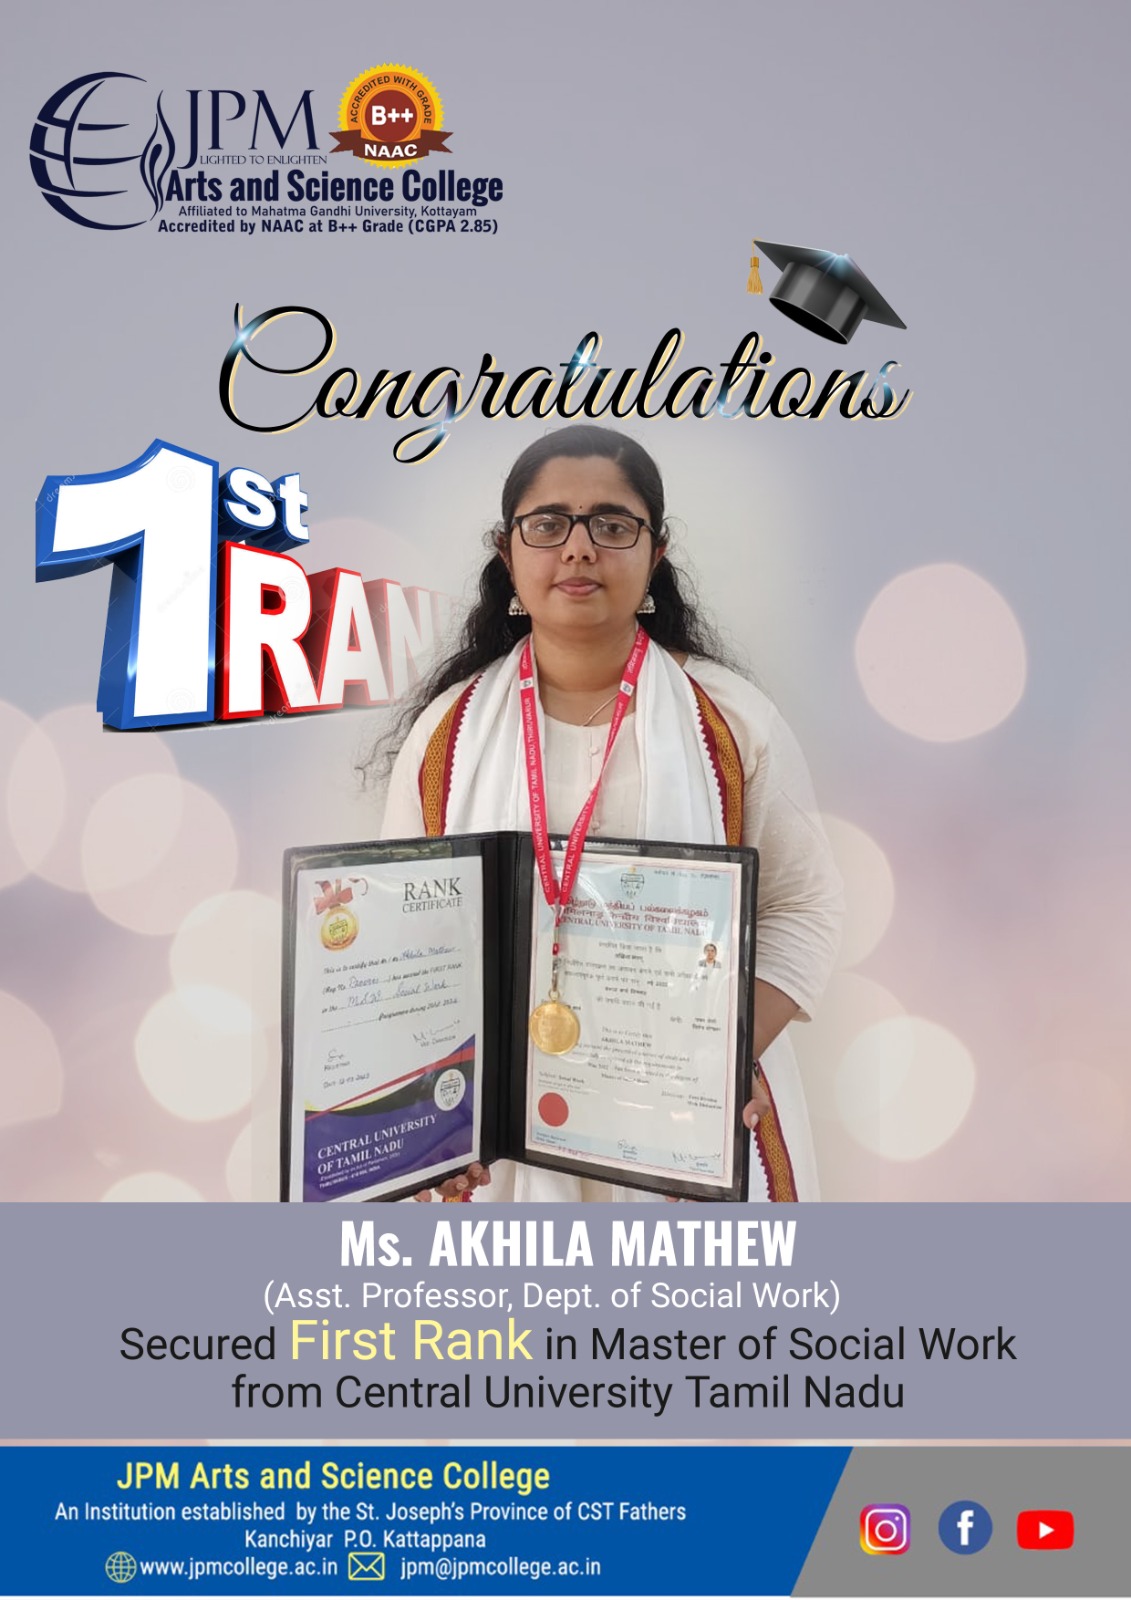 Congratulations Ms. Akhila Mathew, Asst. Professor Dept. of Social Work